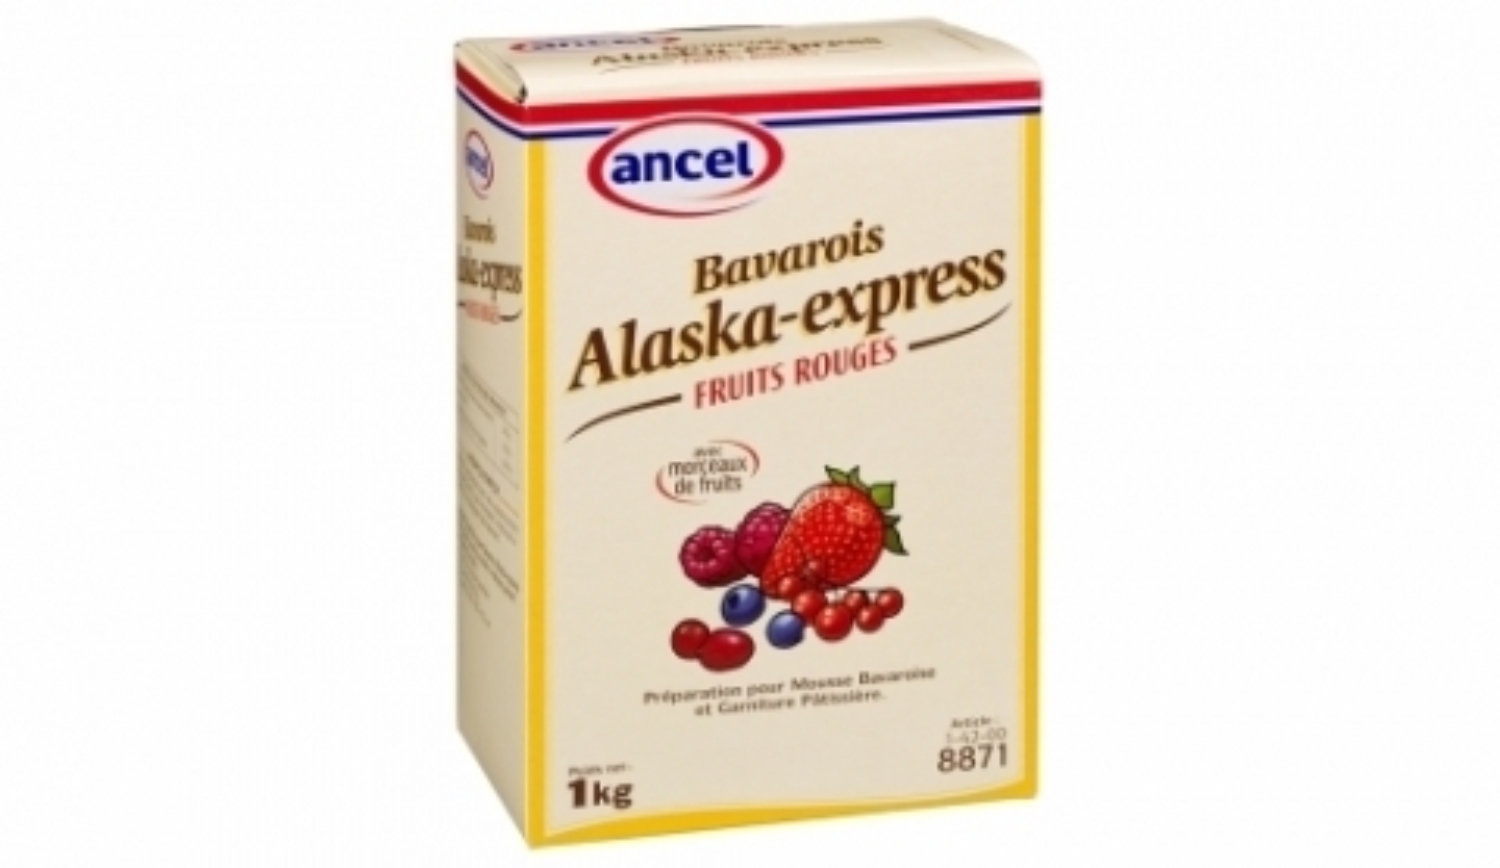 Bavarois Alaska-Express Fruits Rouges Ancel Le Comptoir de la Patisserie